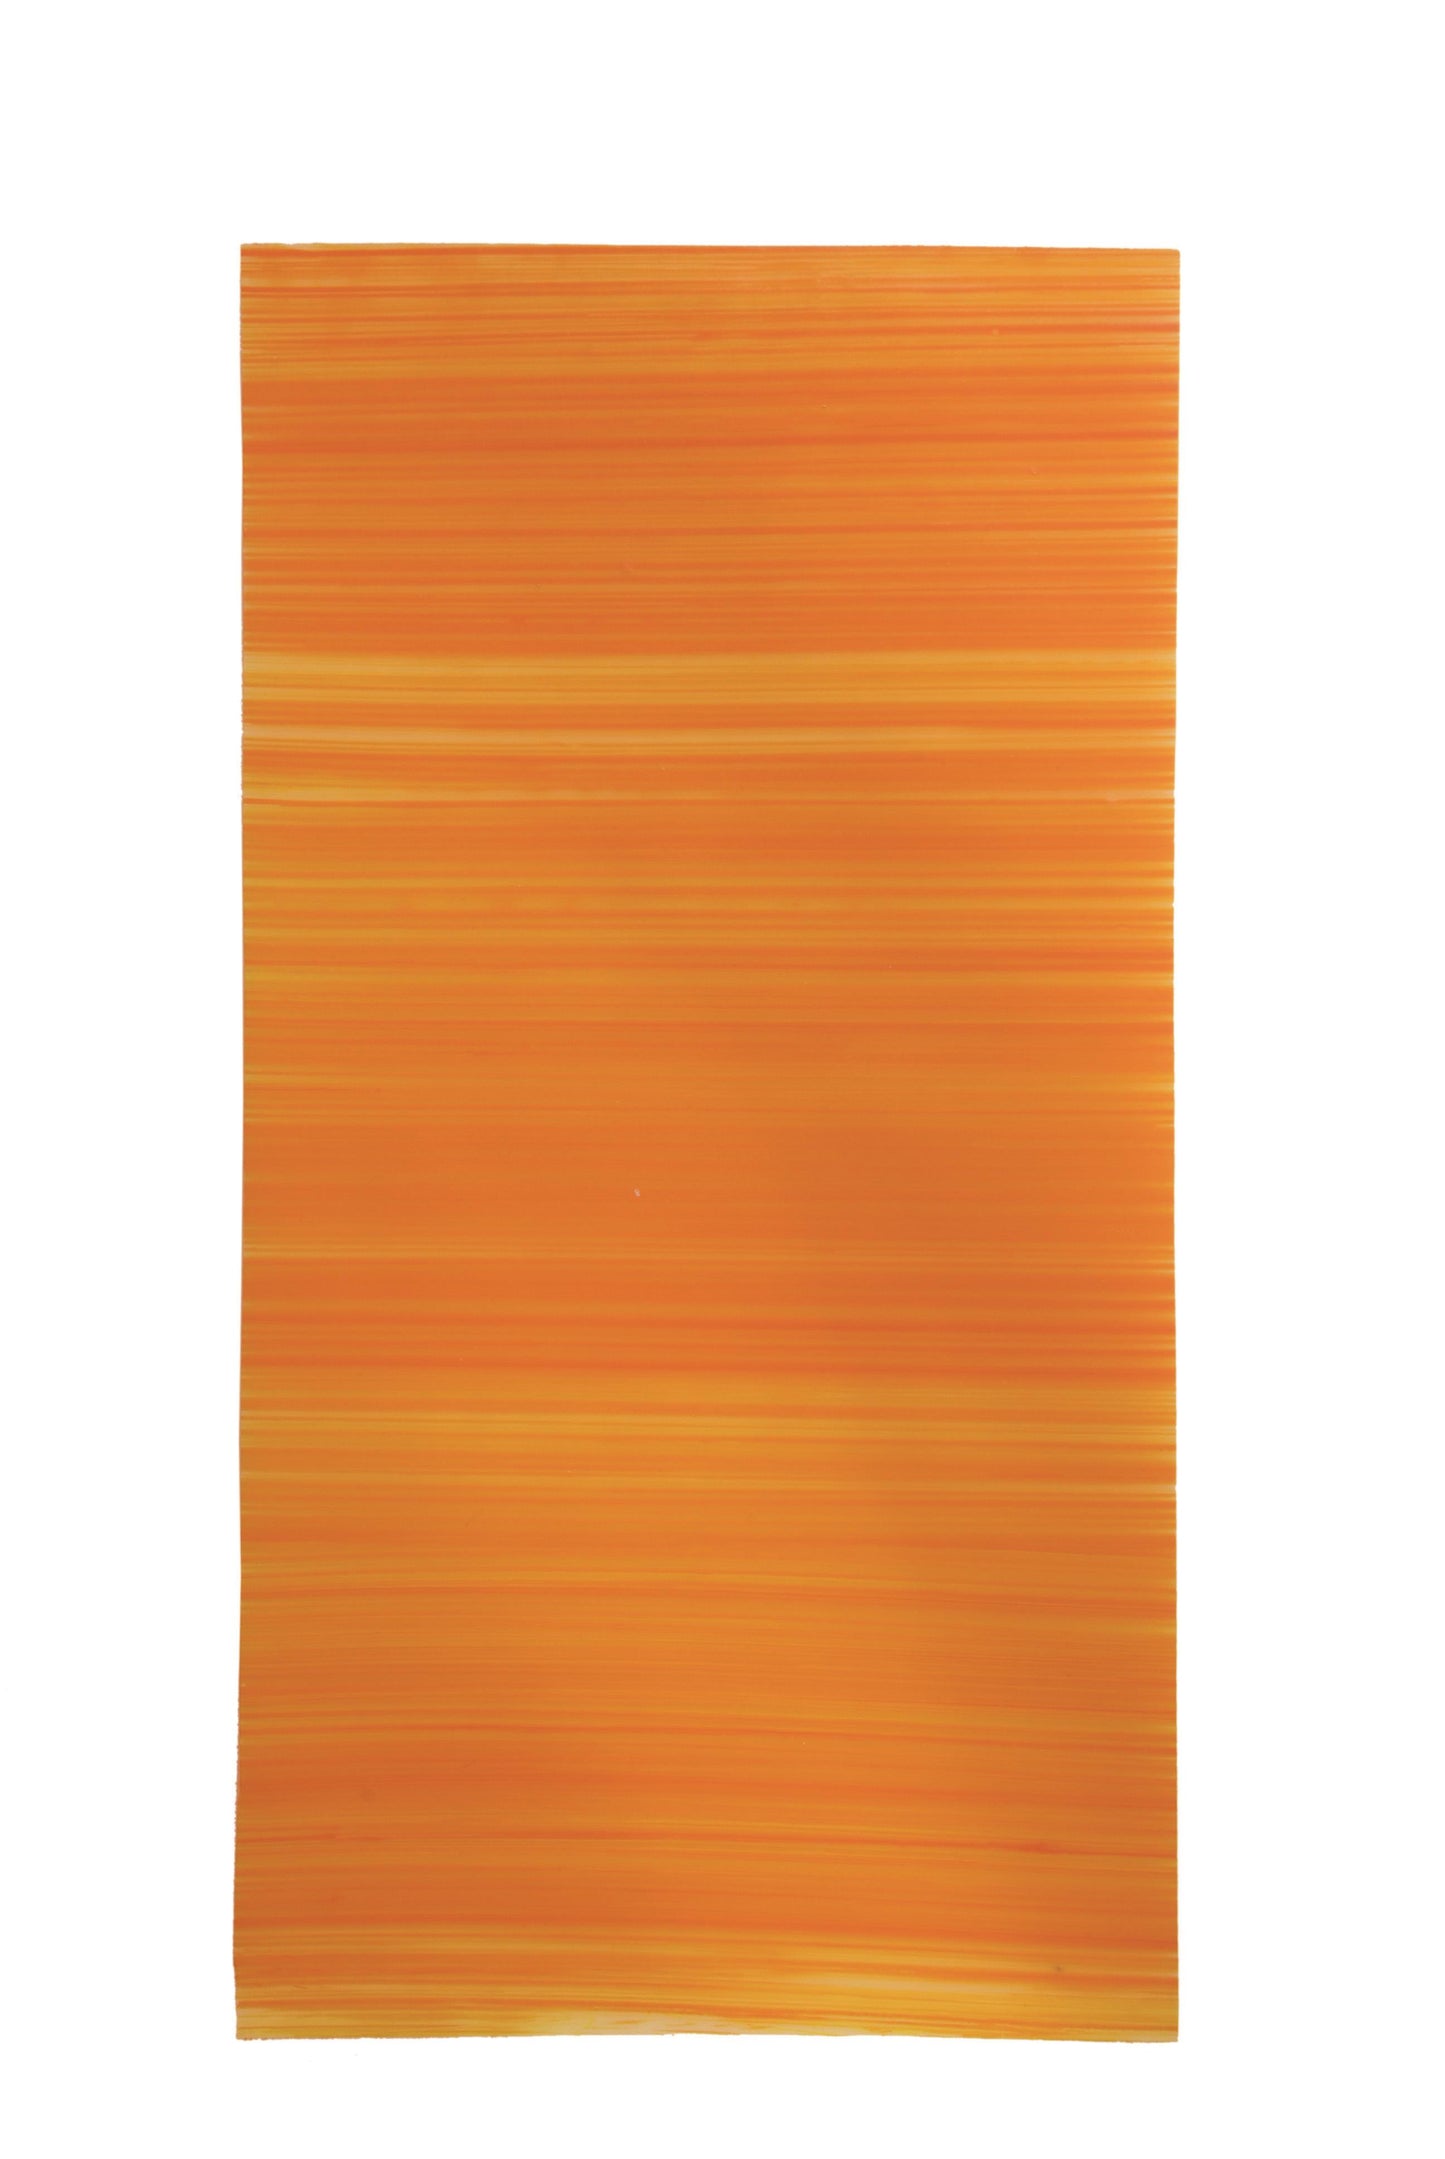 10x Wachsplatten gestreift Kartonware 200/100mm (Orange)